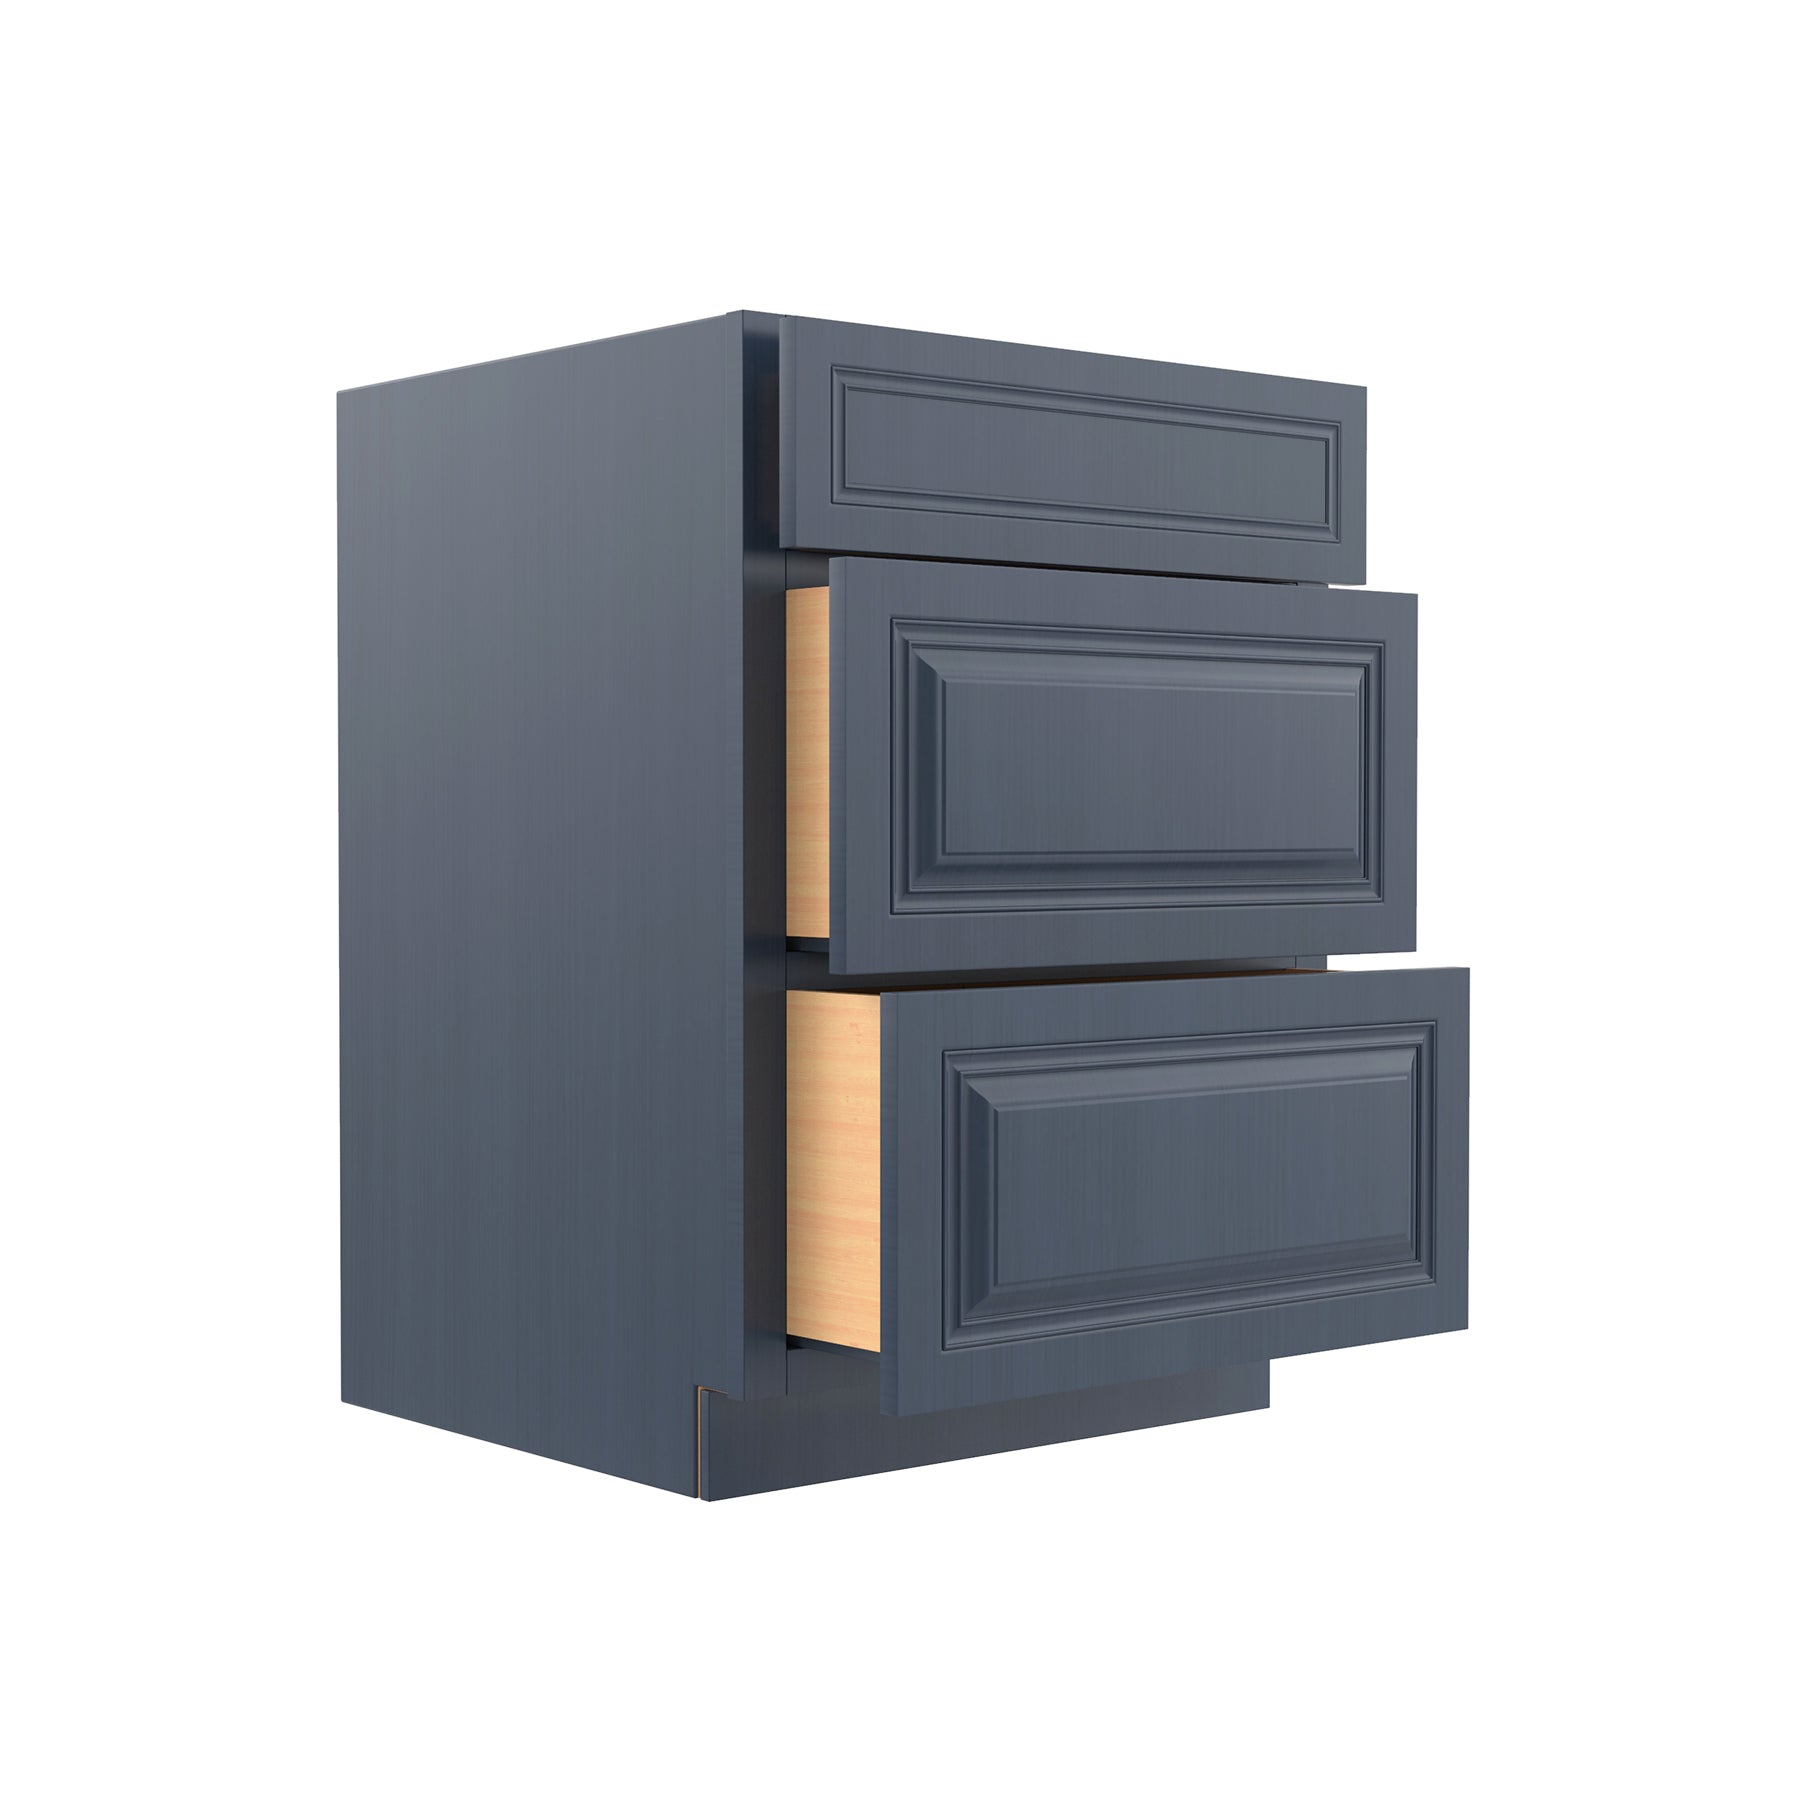 Park Avenue Ocean Blue - 3 Drawer Base Cabinet | 24"W x 34.5"H x 24"D